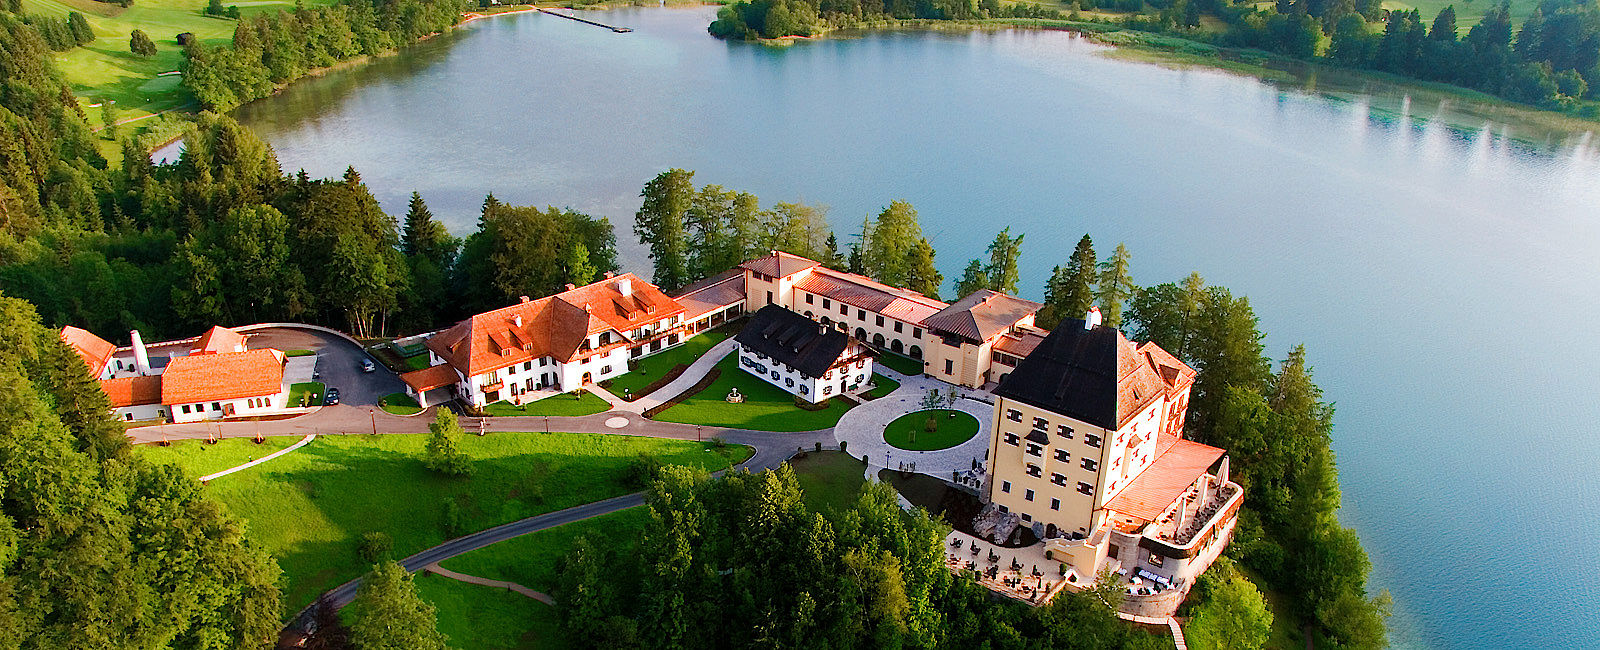 HOTELTEST
 Schloss Fuschl 
 Ein Märchenschloss erstrahlt in neuem Glanz 